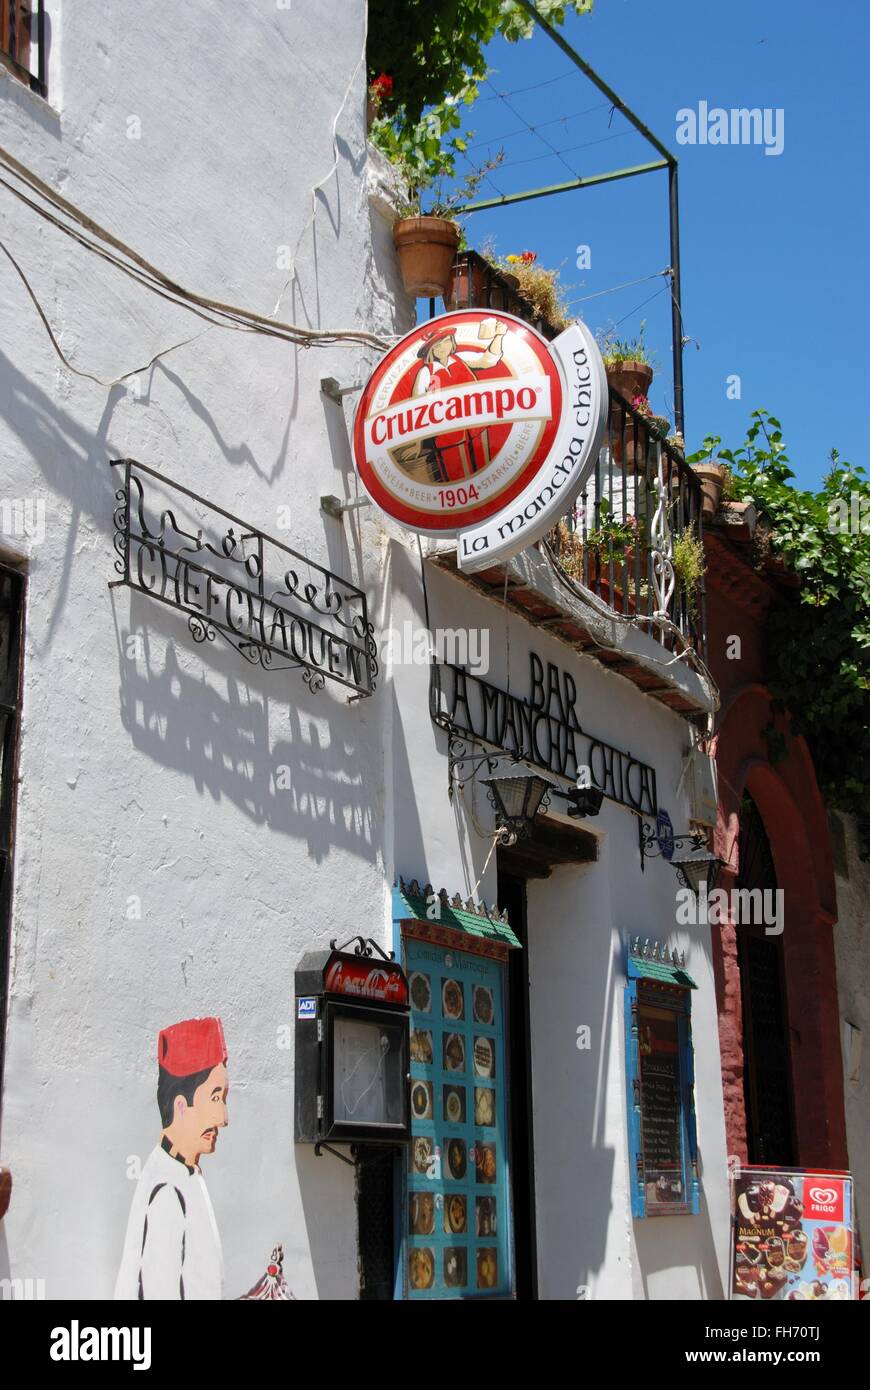 La Mancha Chica Bar in the Albaicin District, Granada, Granada Province, Andalusia, Spain, Western Europe. Stock Photo